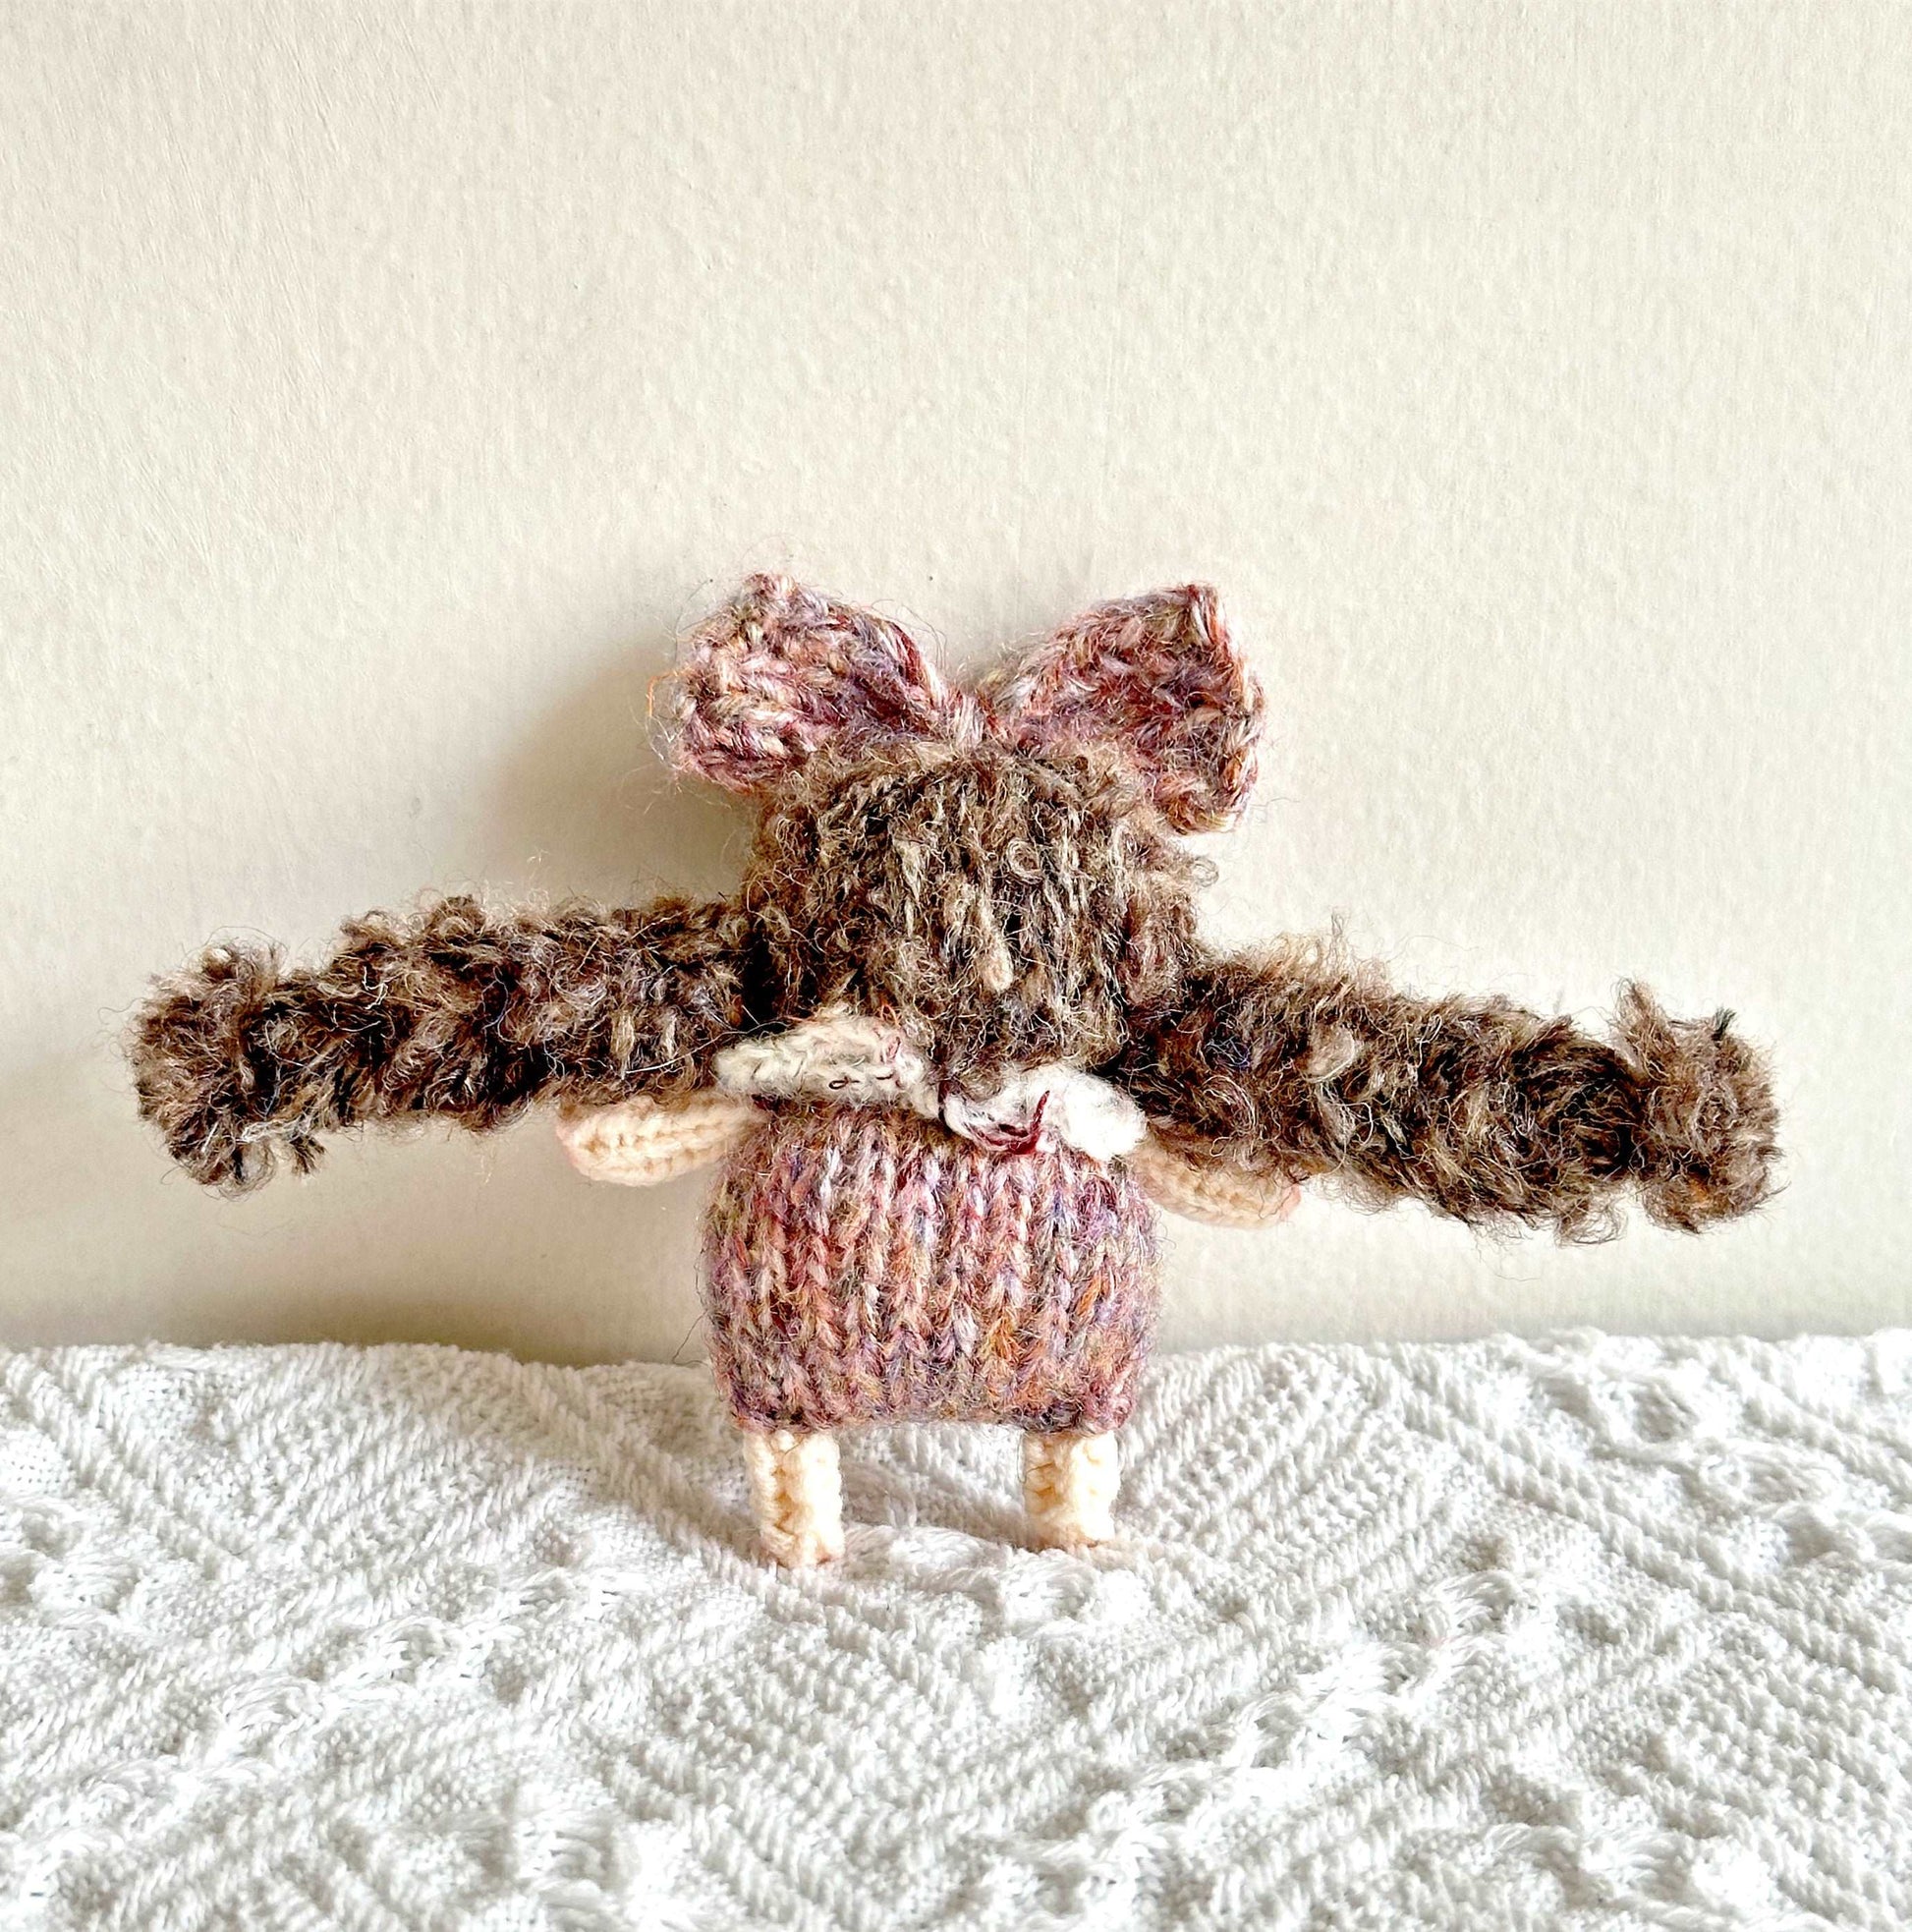 Lovely Crochet Girl Doll Keepsake Ornament for Special Memories and Celebrations